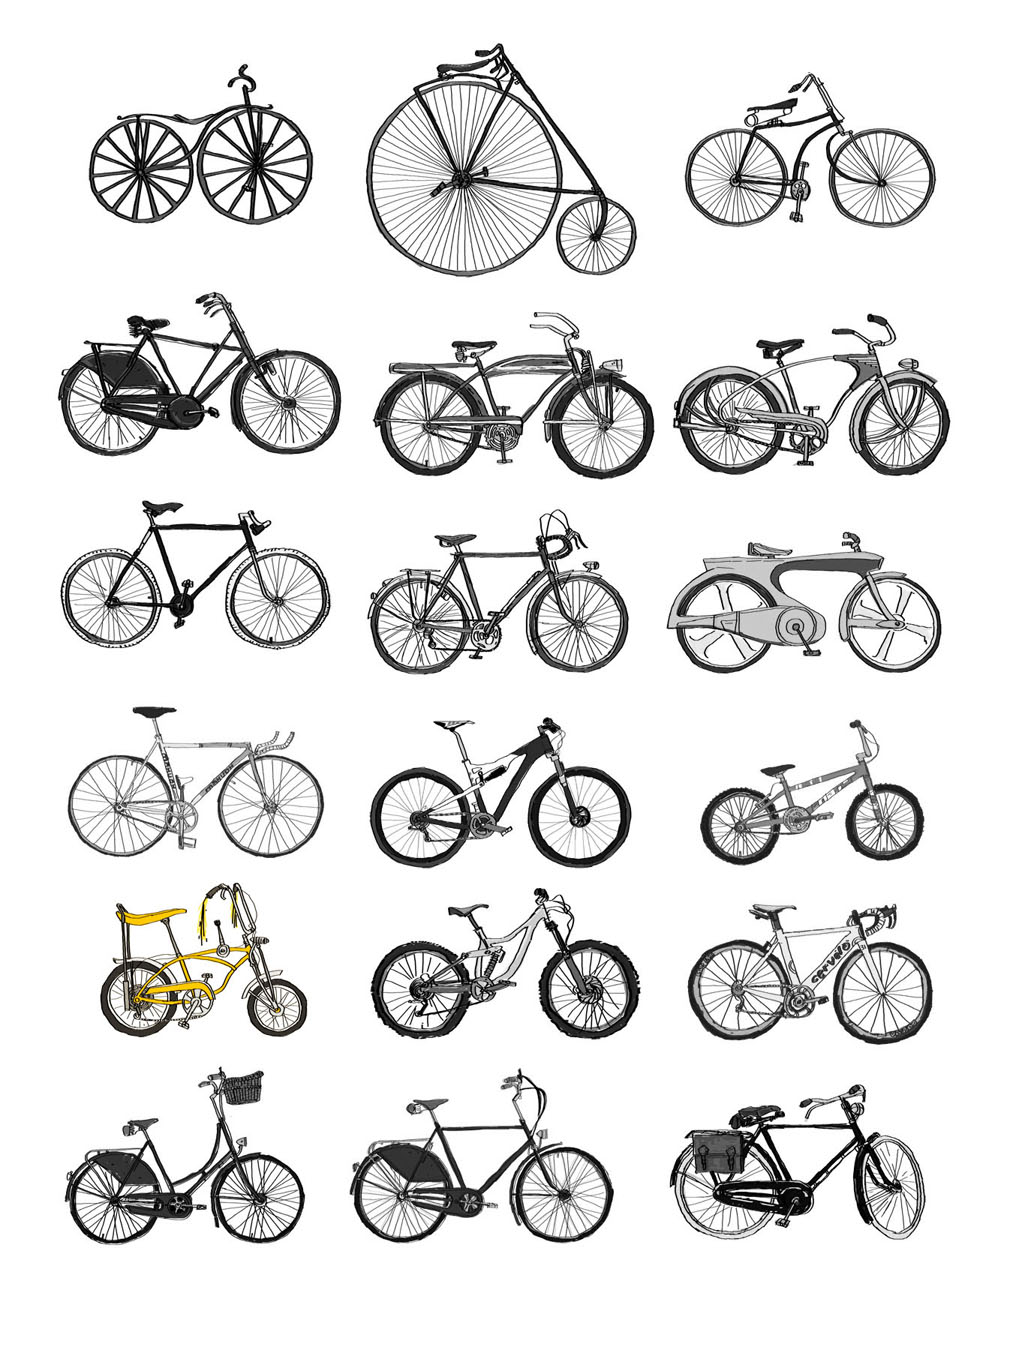 Модели велосипедов разного времени